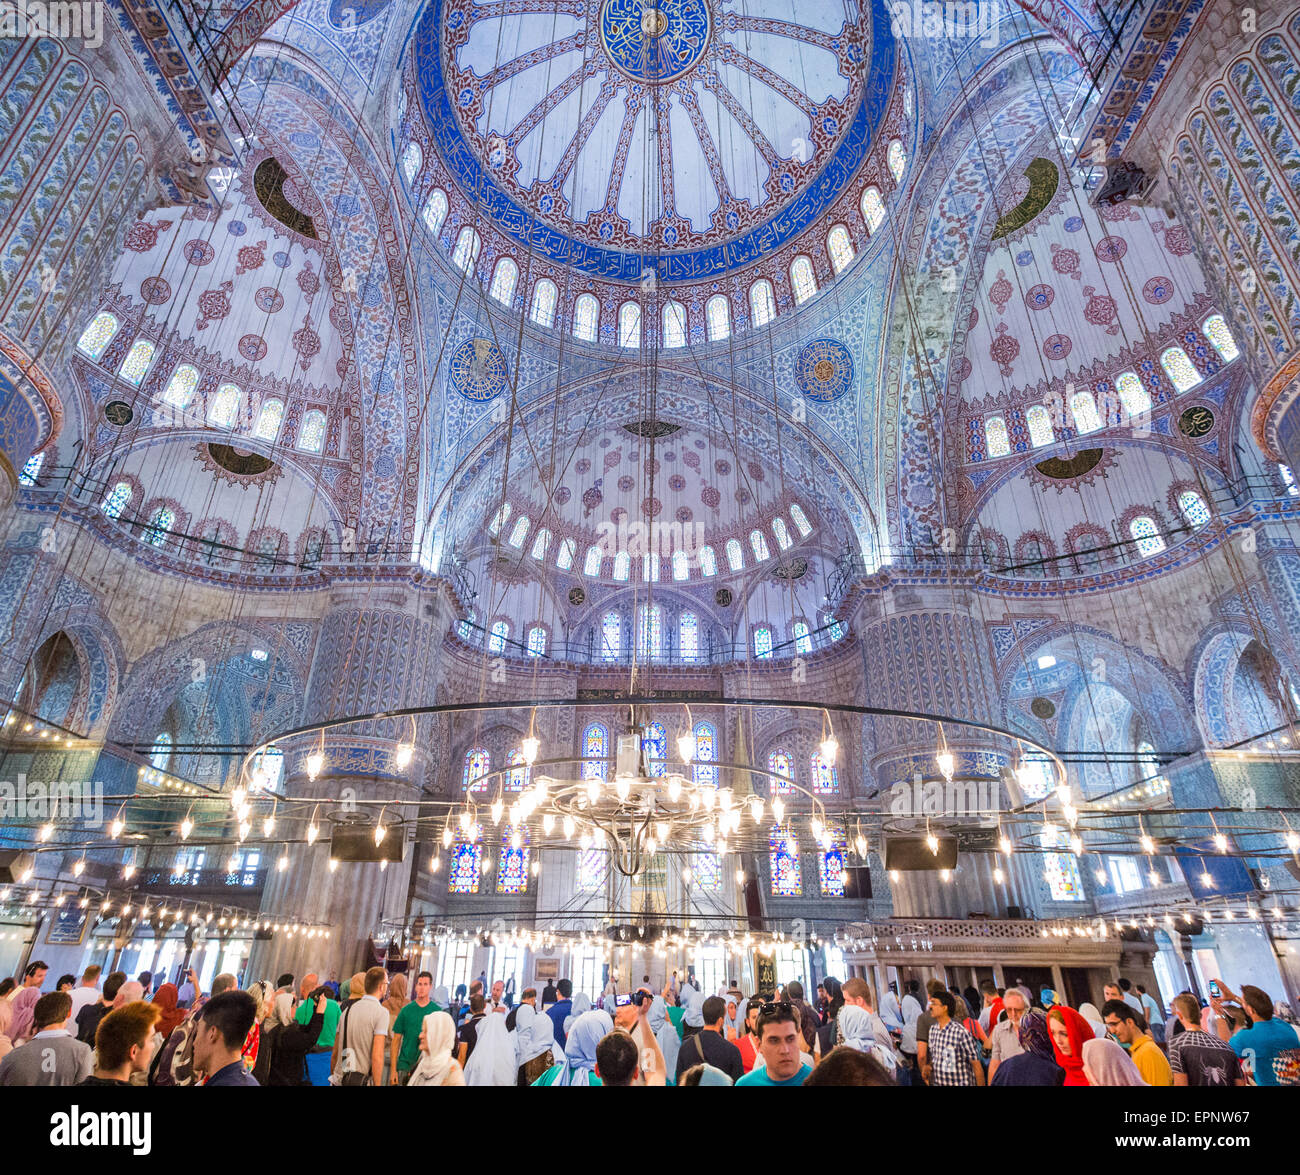 Menschen in der blauen Moschee auch bekannt als Sultan Ahmed Mosque in Istanbul Türkei Stockfoto